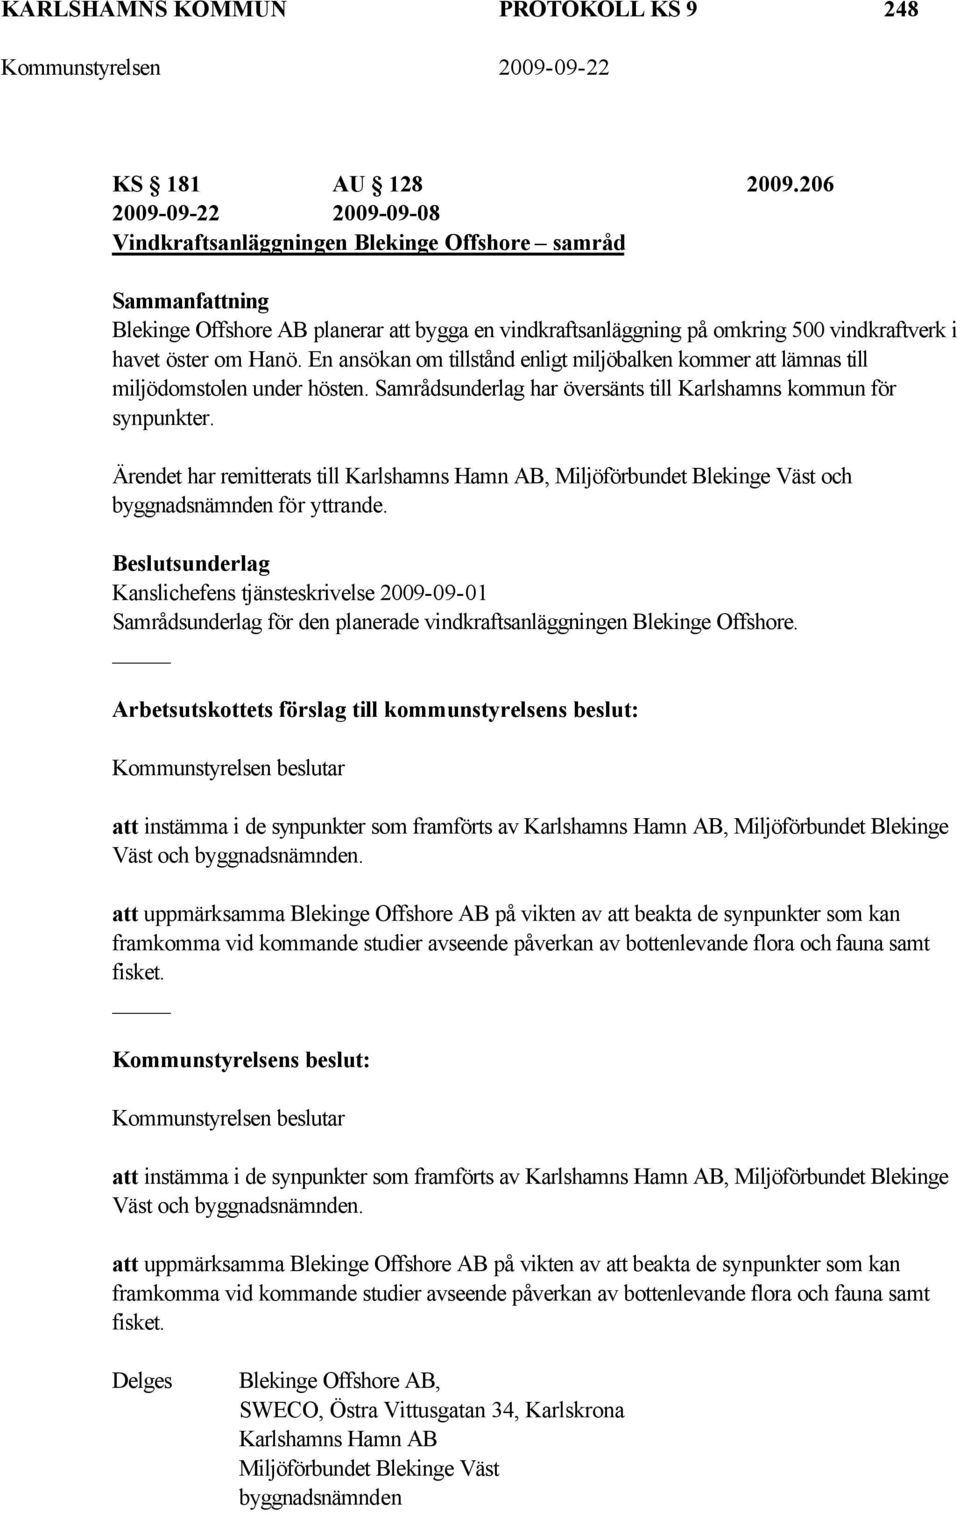 En ansökan om tillstånd enligt miljöbalken kommer att lämnas till miljödomstolen under hösten. Samrådsunderlag har översänts till Karlshamns kommun för synpunkter.